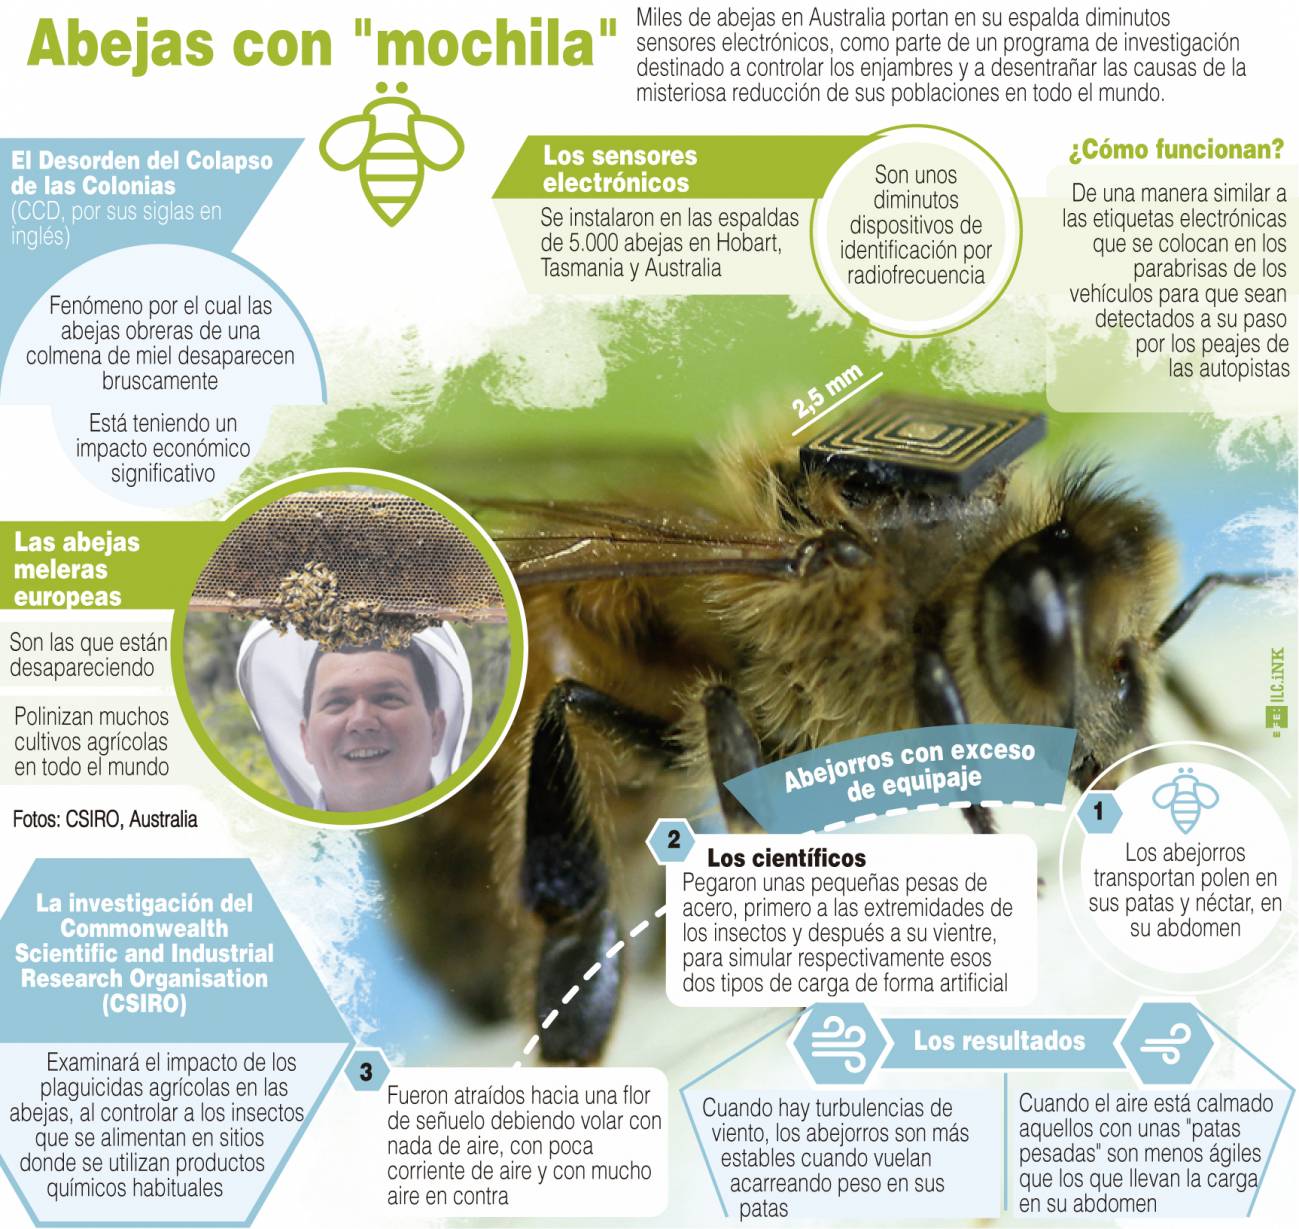 Infografía explicativa de la investigación llevada a cabo en Australia con abejas. / Efe